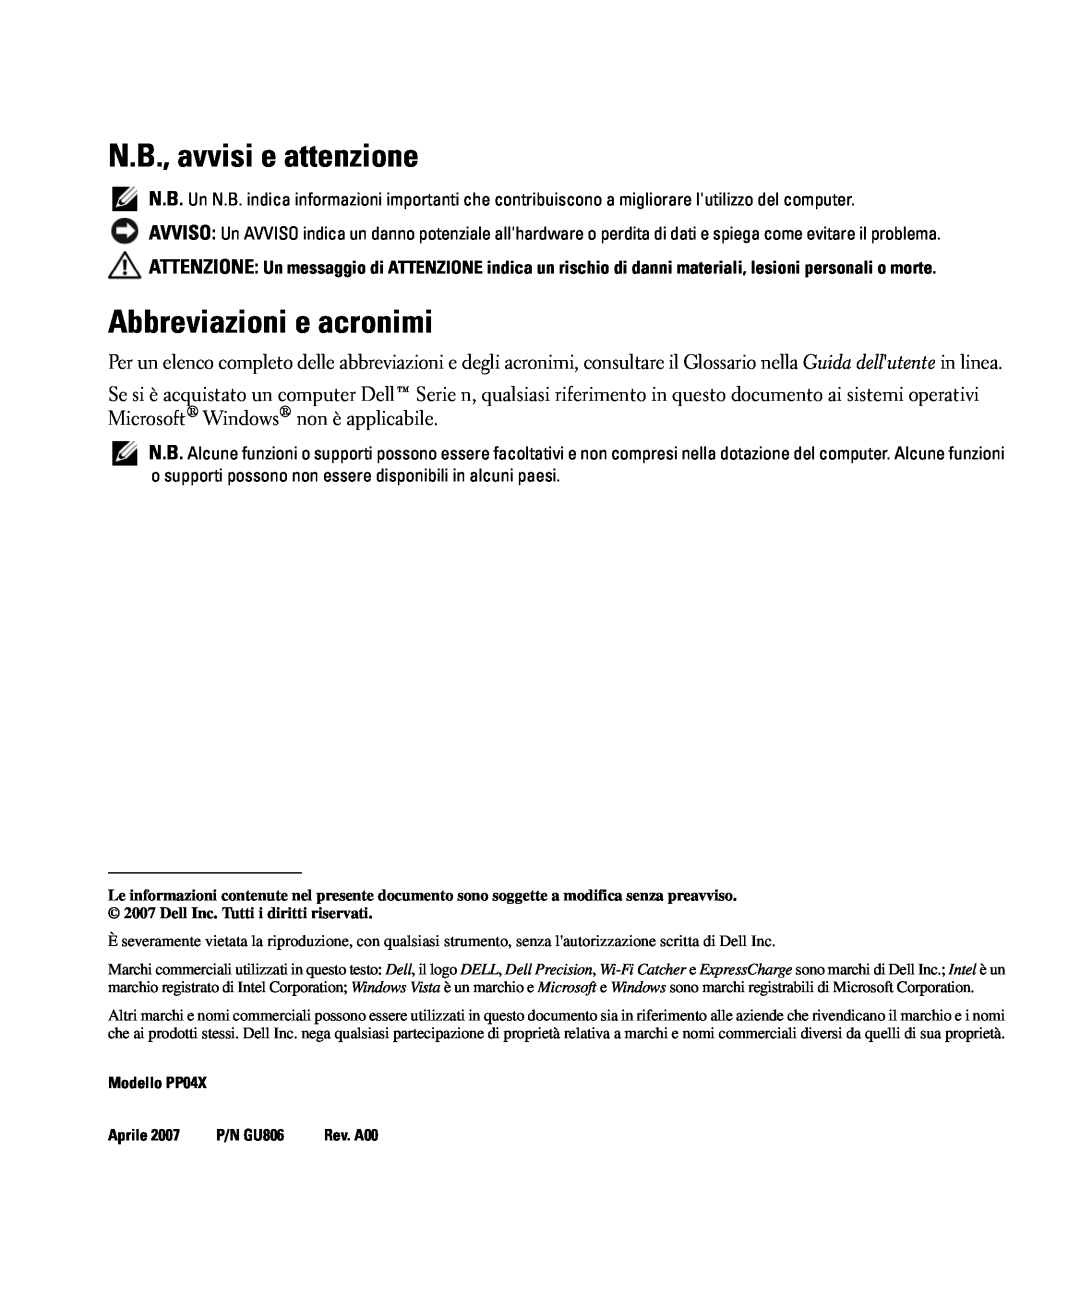 Dell GU806 manual N.B., avvisi e attenzione, Abbreviazioni e acronimi 